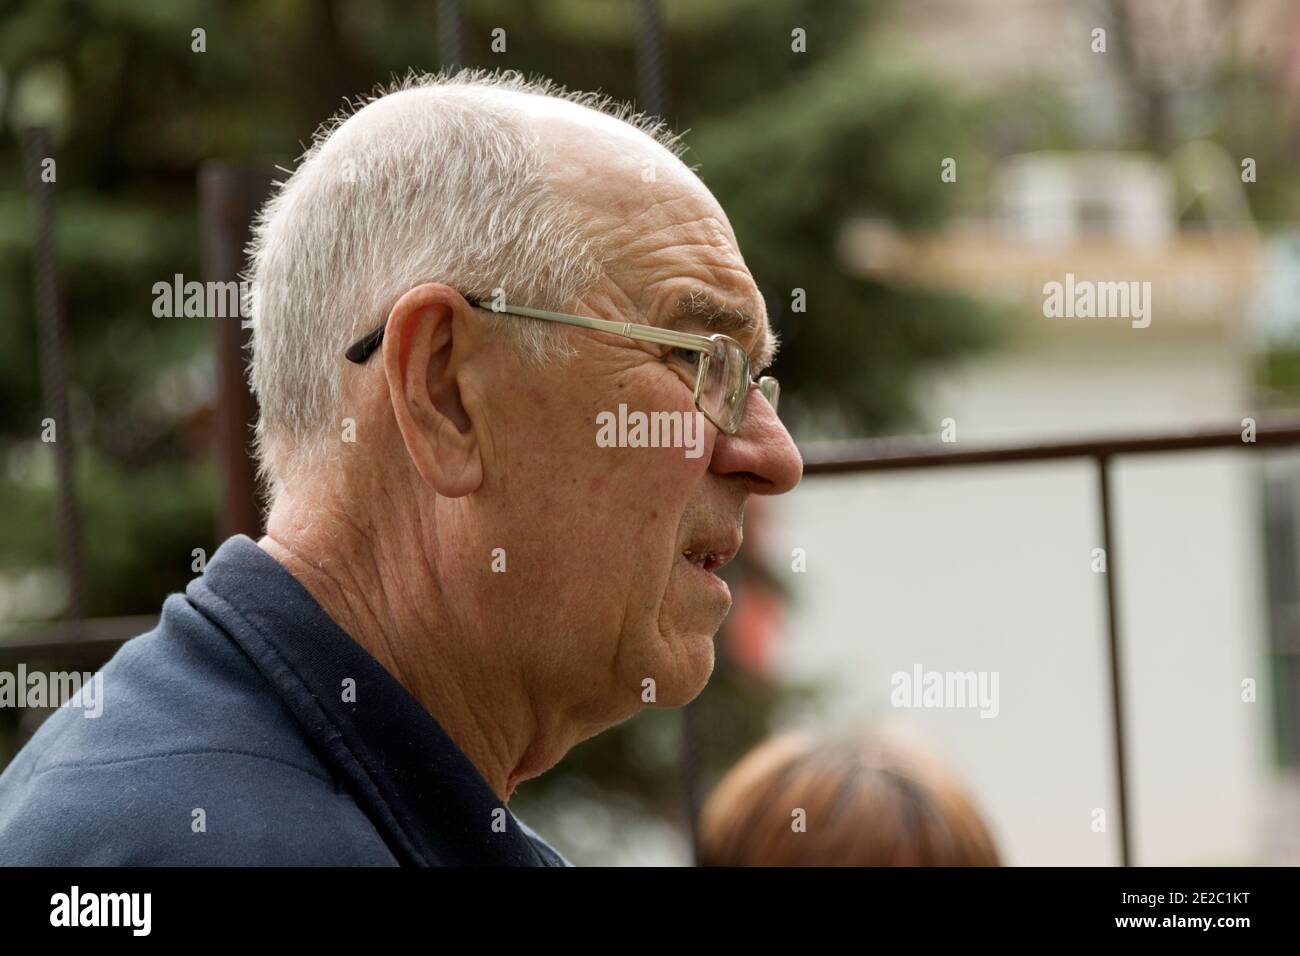 Porträt eines älteren Mannes im Profil auf der Straße. Das Gesicht des älteren Menschen drückt Besorgnis und Verzweiflung aus. Nahaufnahme. Stockfoto